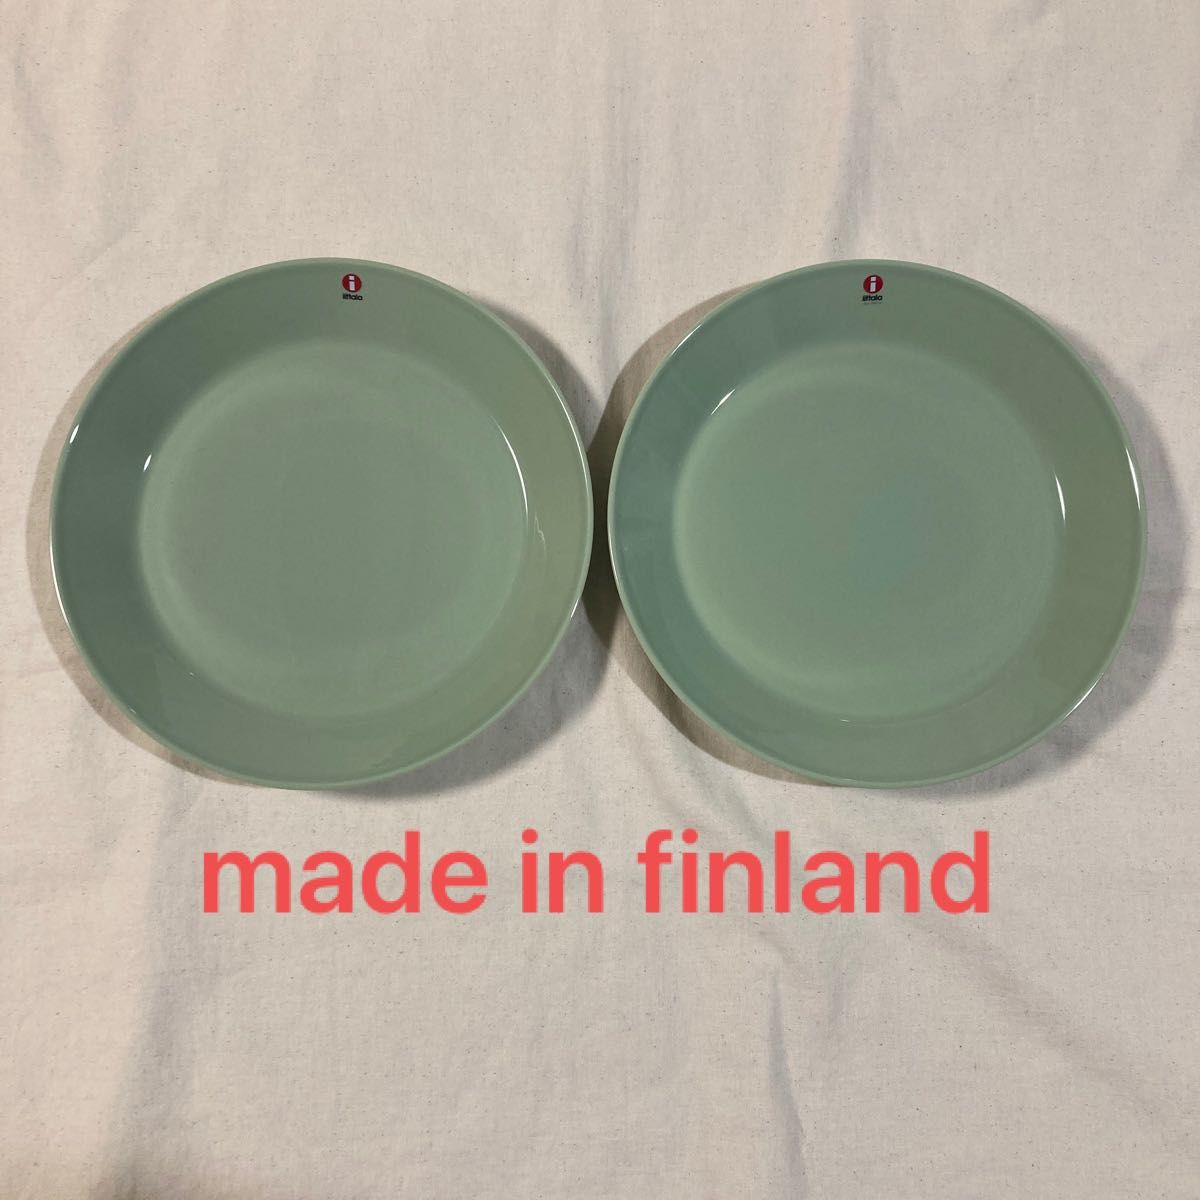 新品 イッタラ ティーマ teema セラドングリーン プレート フィンランド製 廃盤 お皿 ボール 北欧 アラビア 21cm